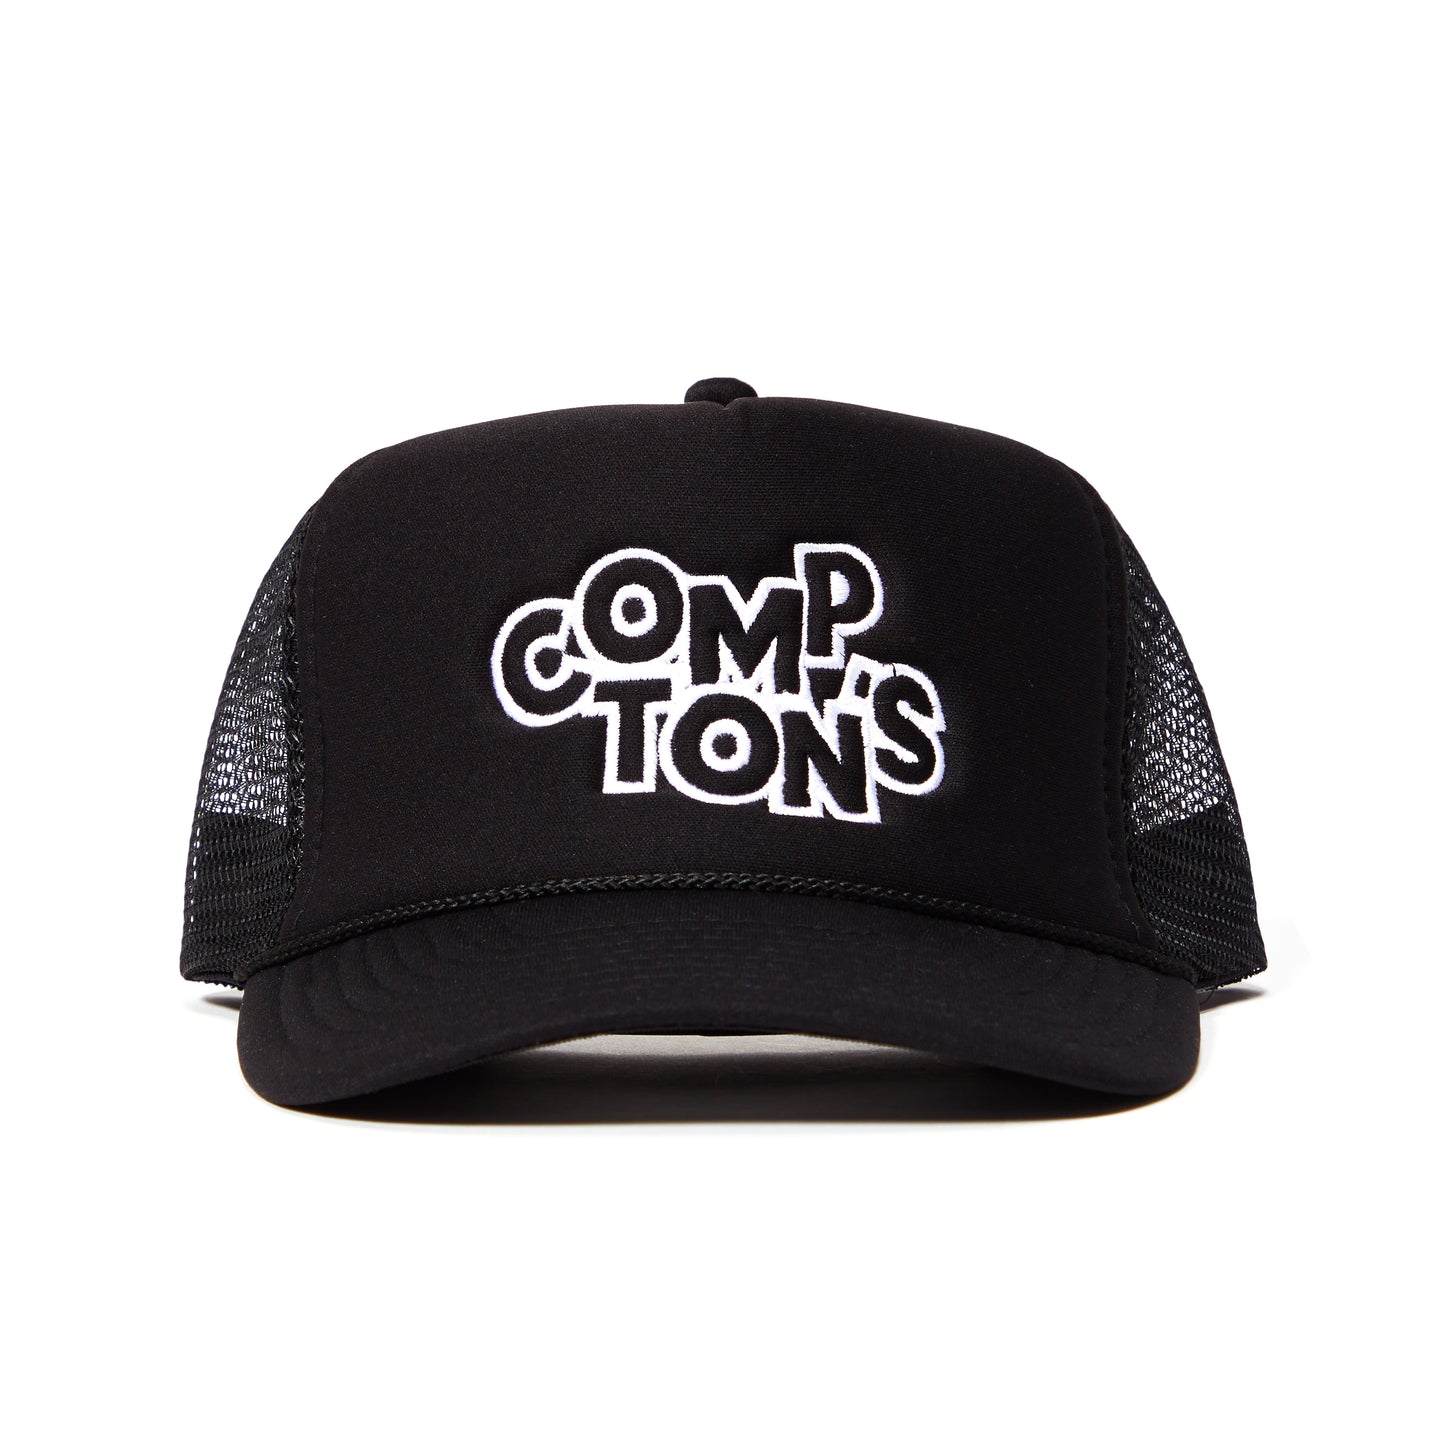 COMPTON'S TRUCKER HAT